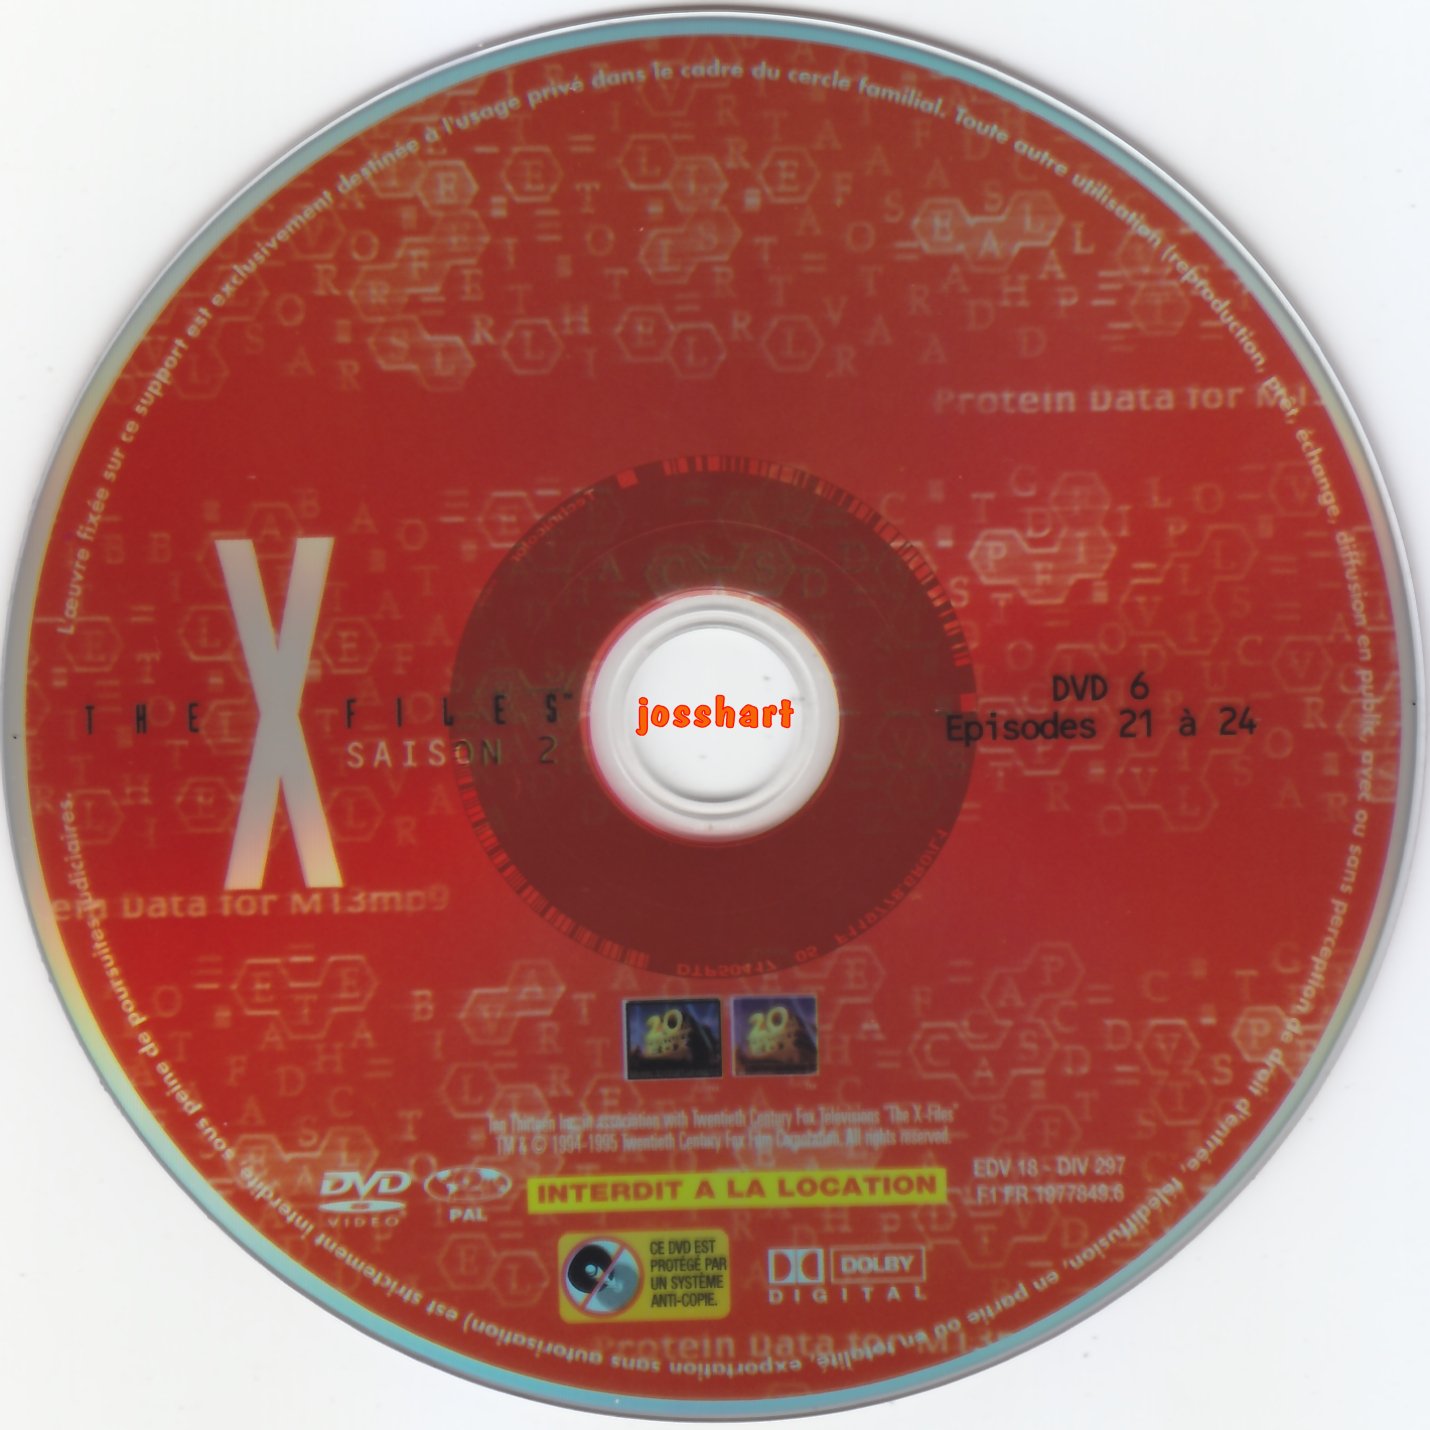 The X Files Saison 2 DVD 6 v2